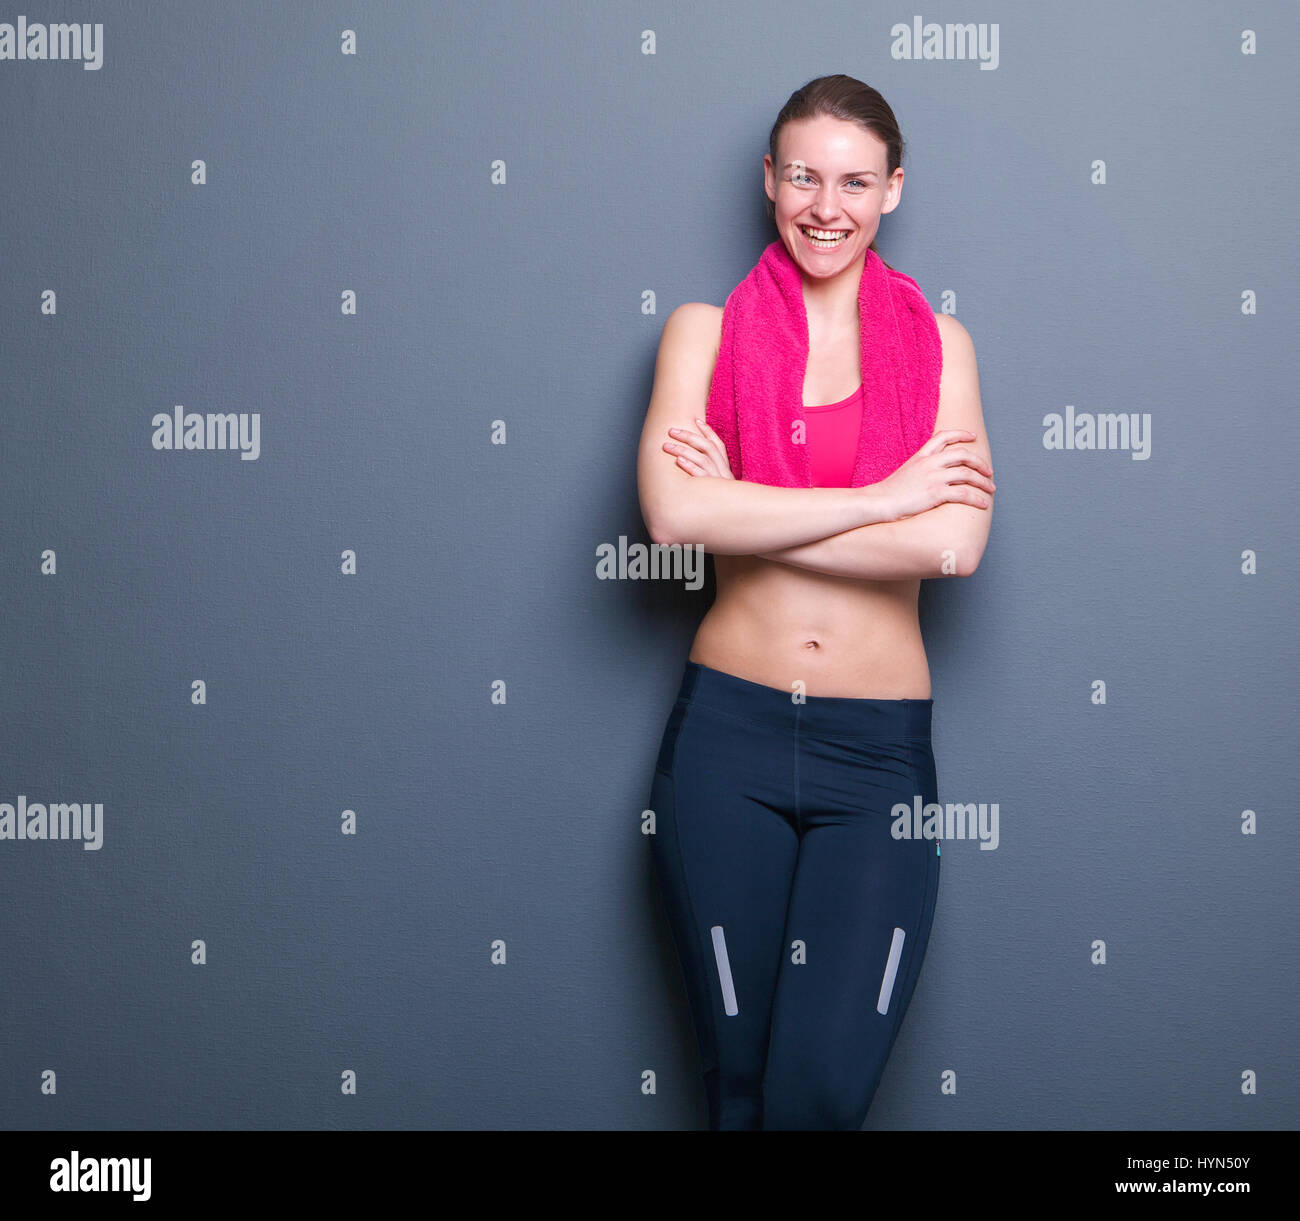 Portrait of a smiling young woman relaxing athlétique sur fond gris avec serviette Banque D'Images